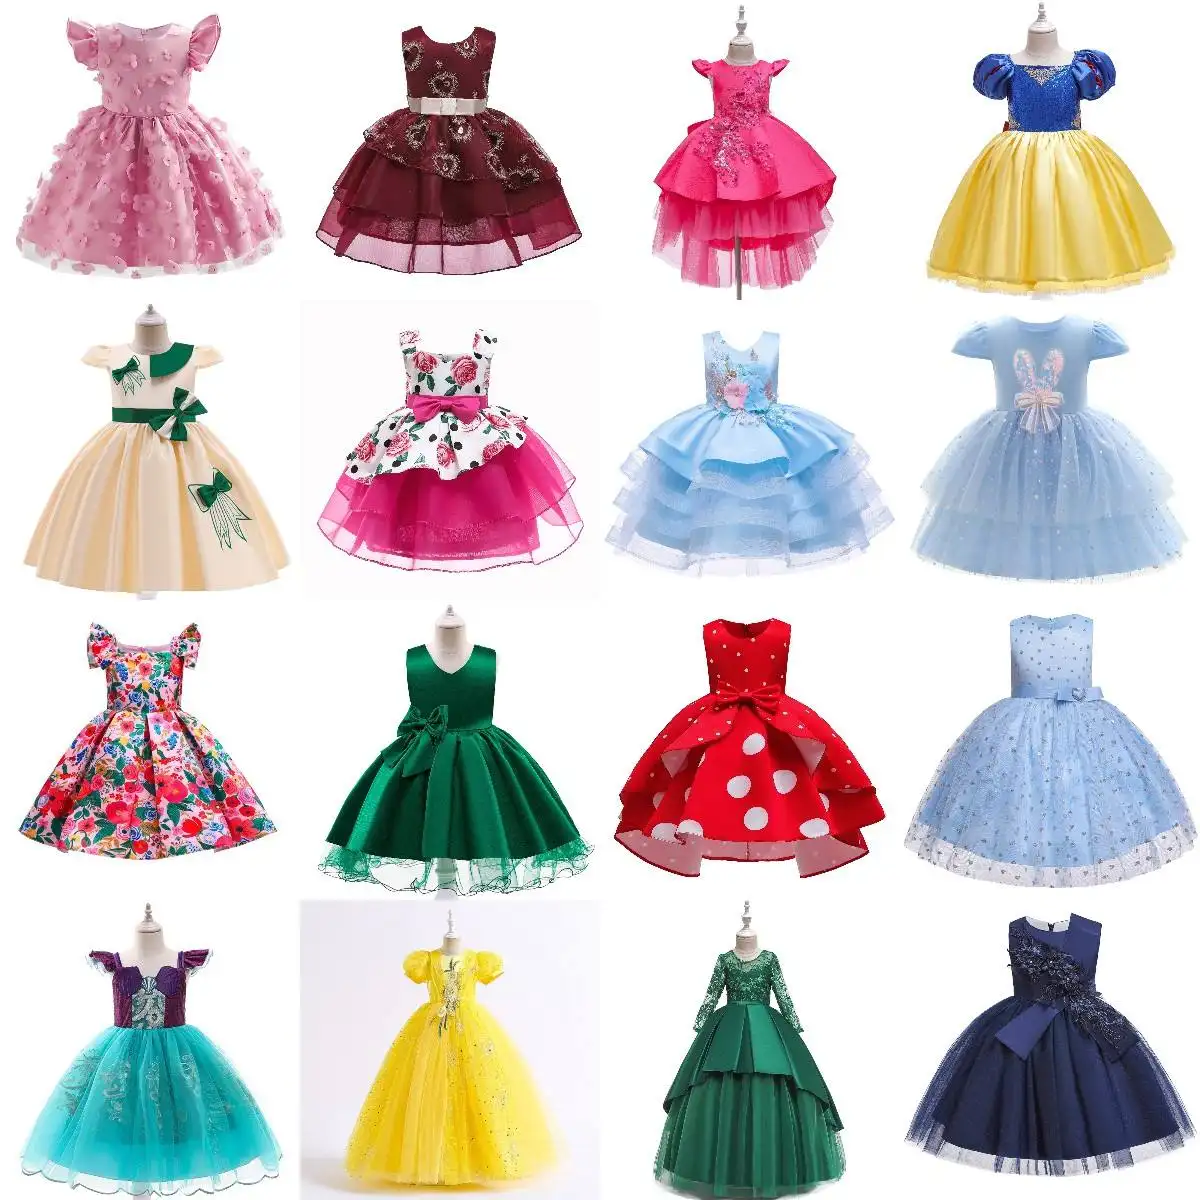 중국은 고급 소녀 옷 드레스를 뜨거운 판매 저렴한 어린이 드레스 어린이 옷 인쇄 여름